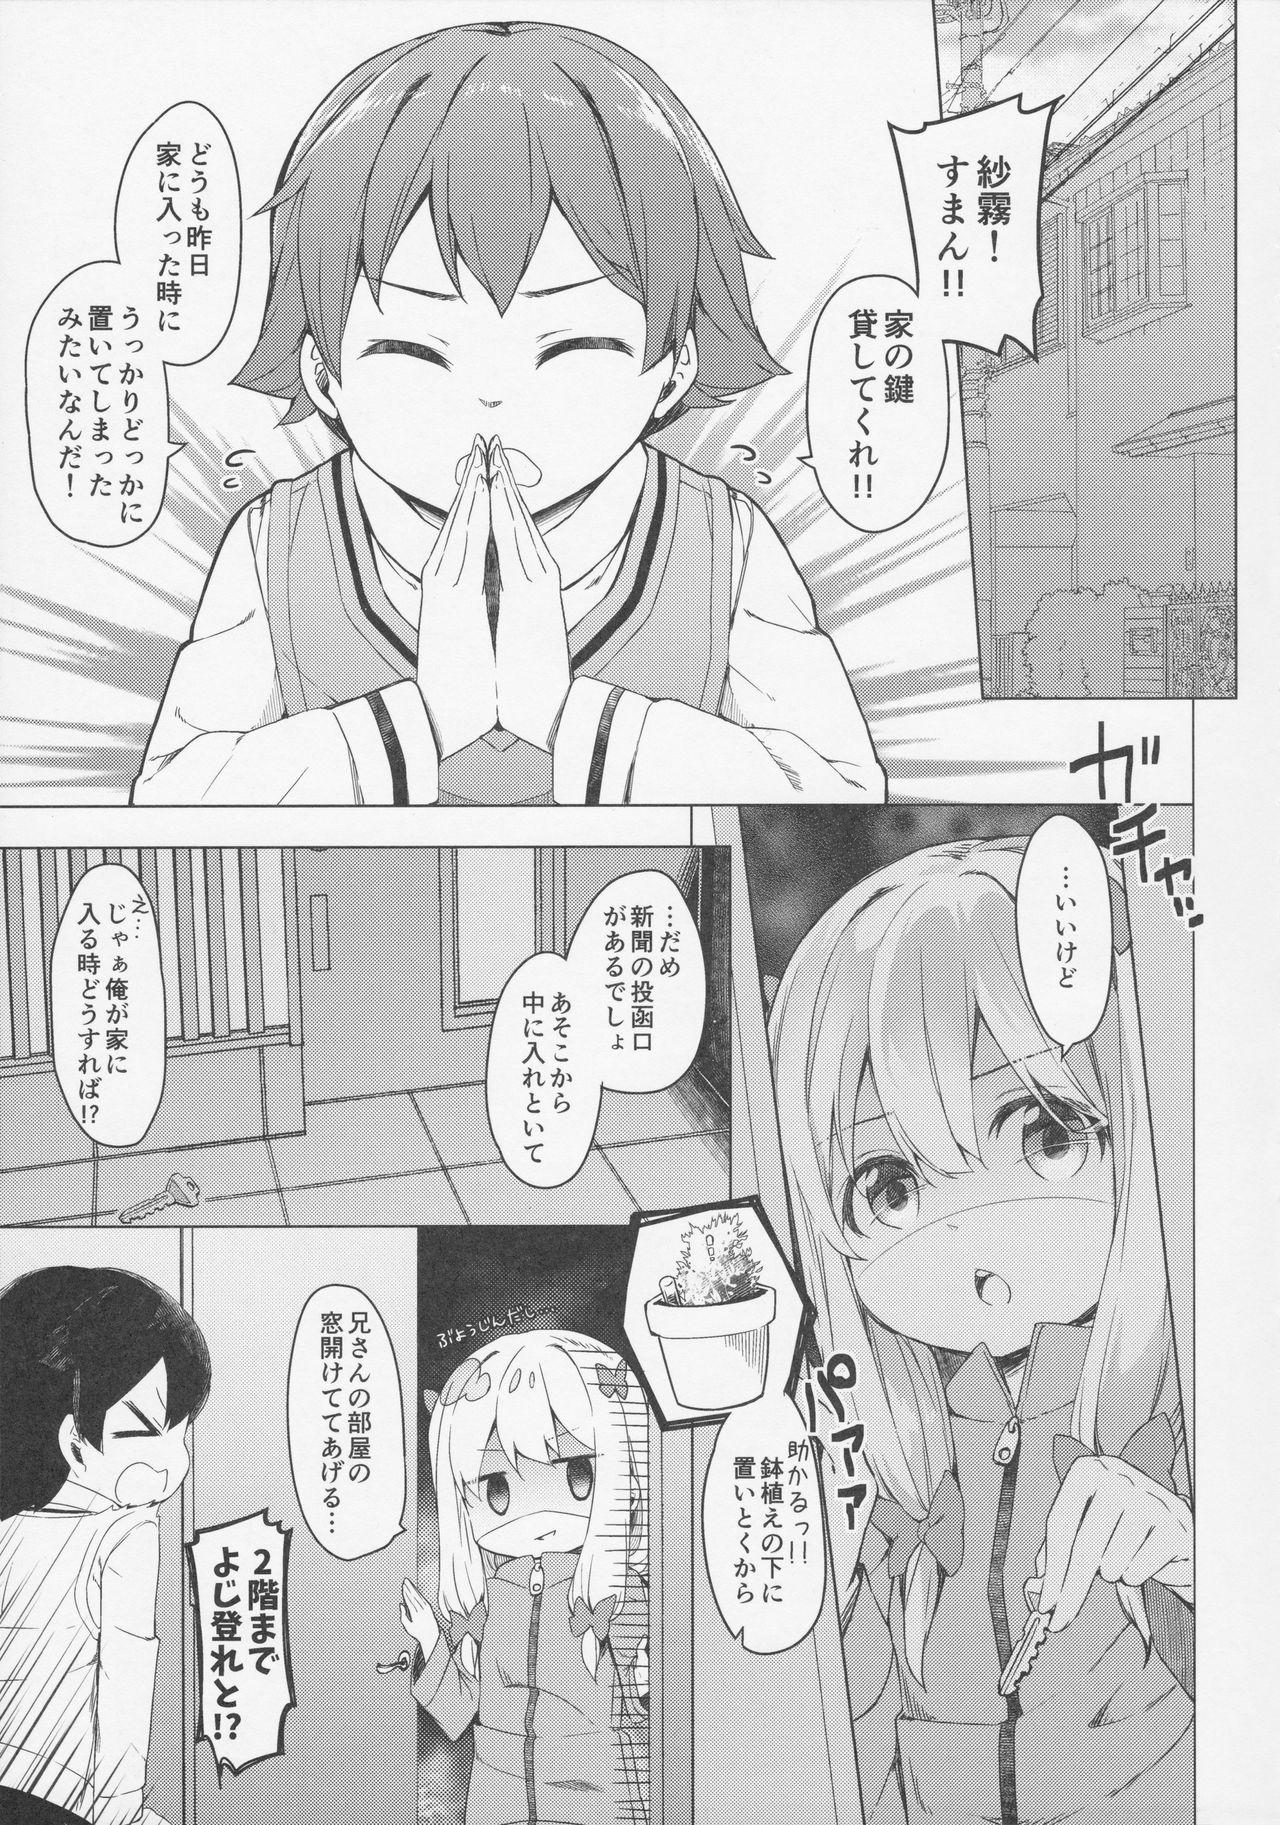 Pendeja Yatta ne Sagiri-chan Shiryou ga Fueru ne! - Eromanga sensei Groupfuck - Page 6